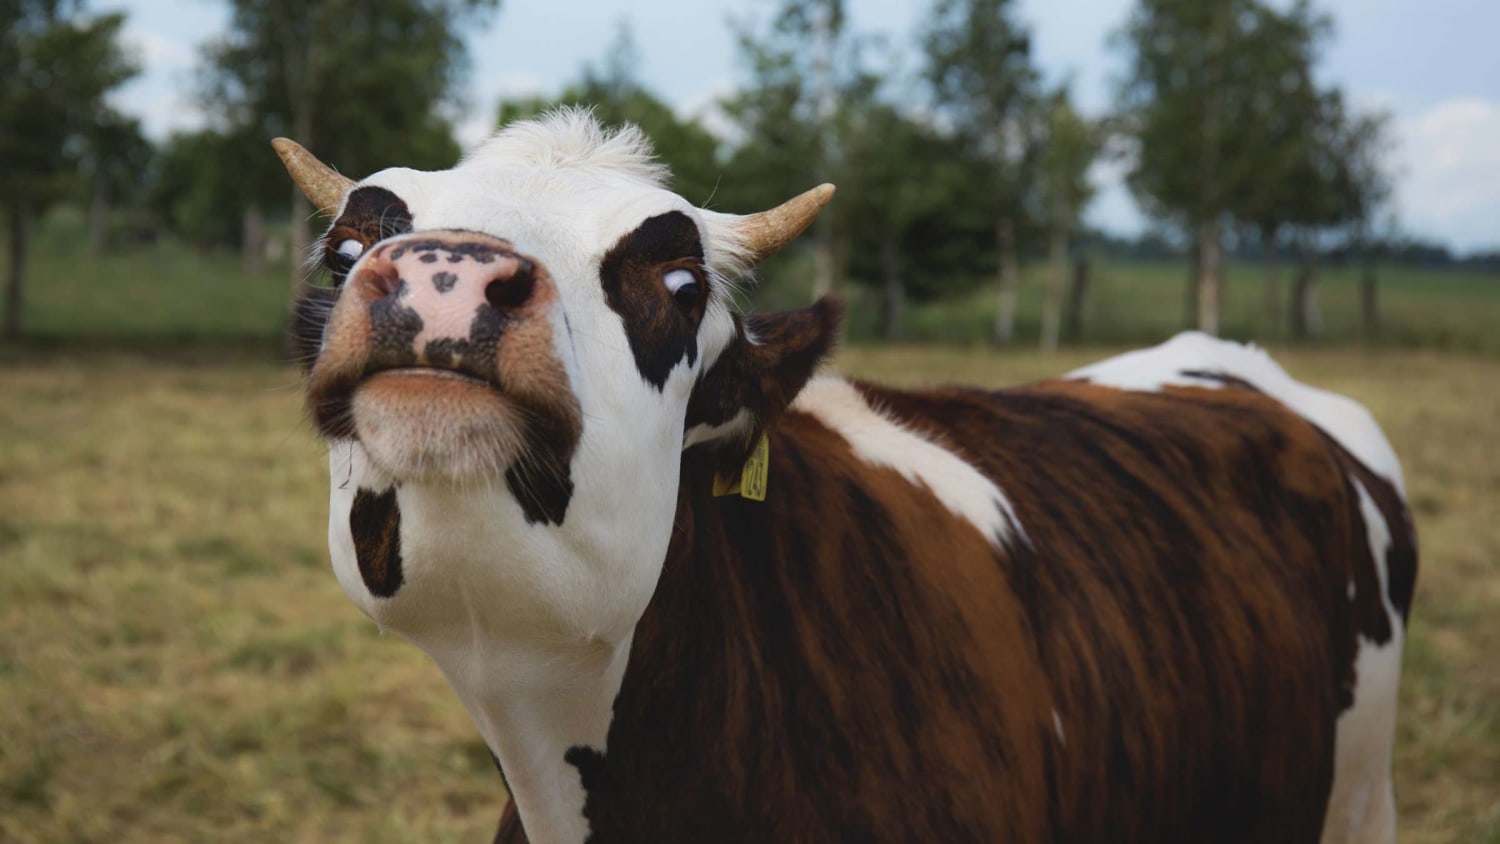 Surprise: Cows Poop Corn Kernels, Too